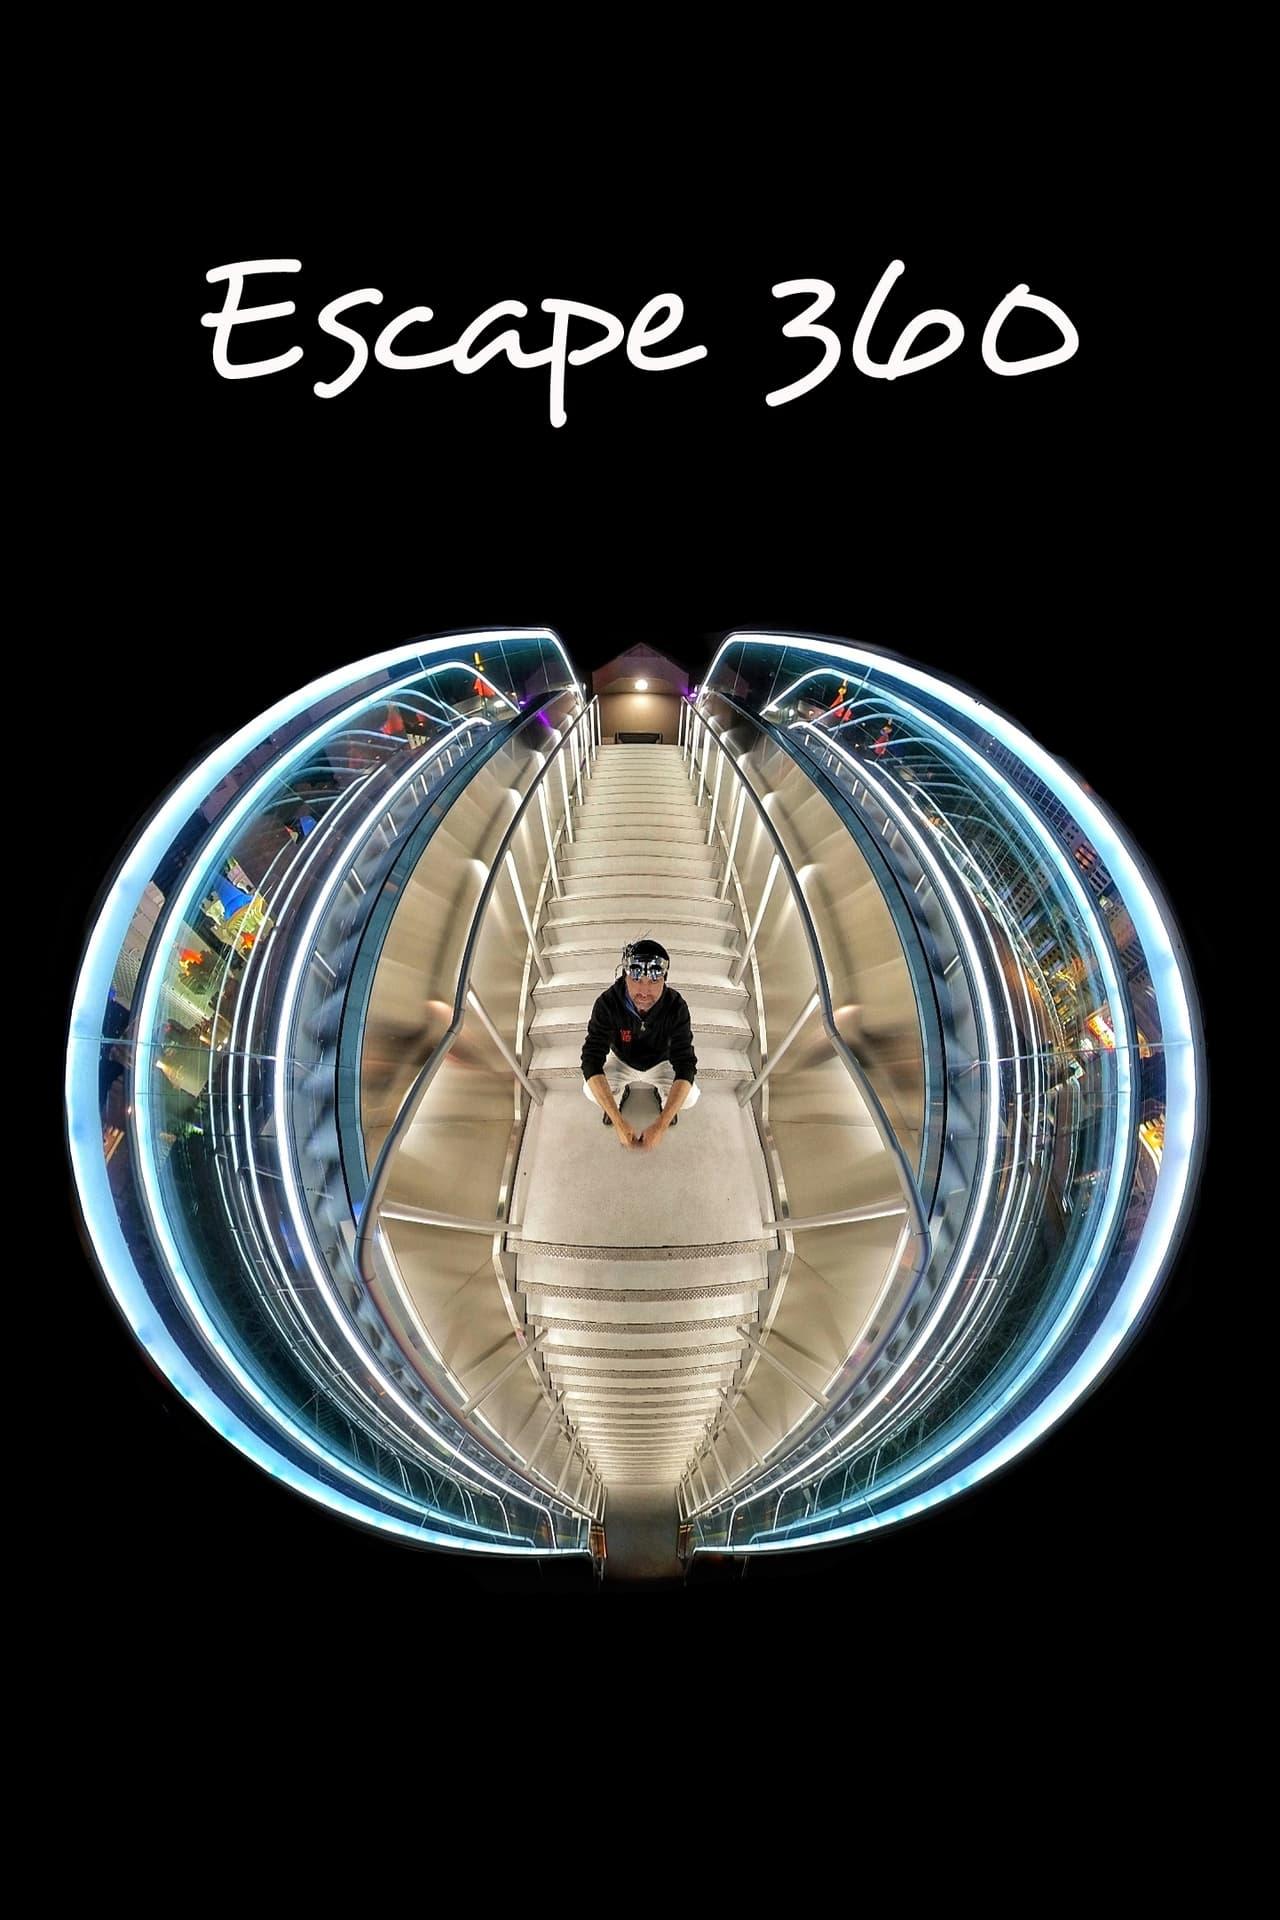 Escape 360 poster